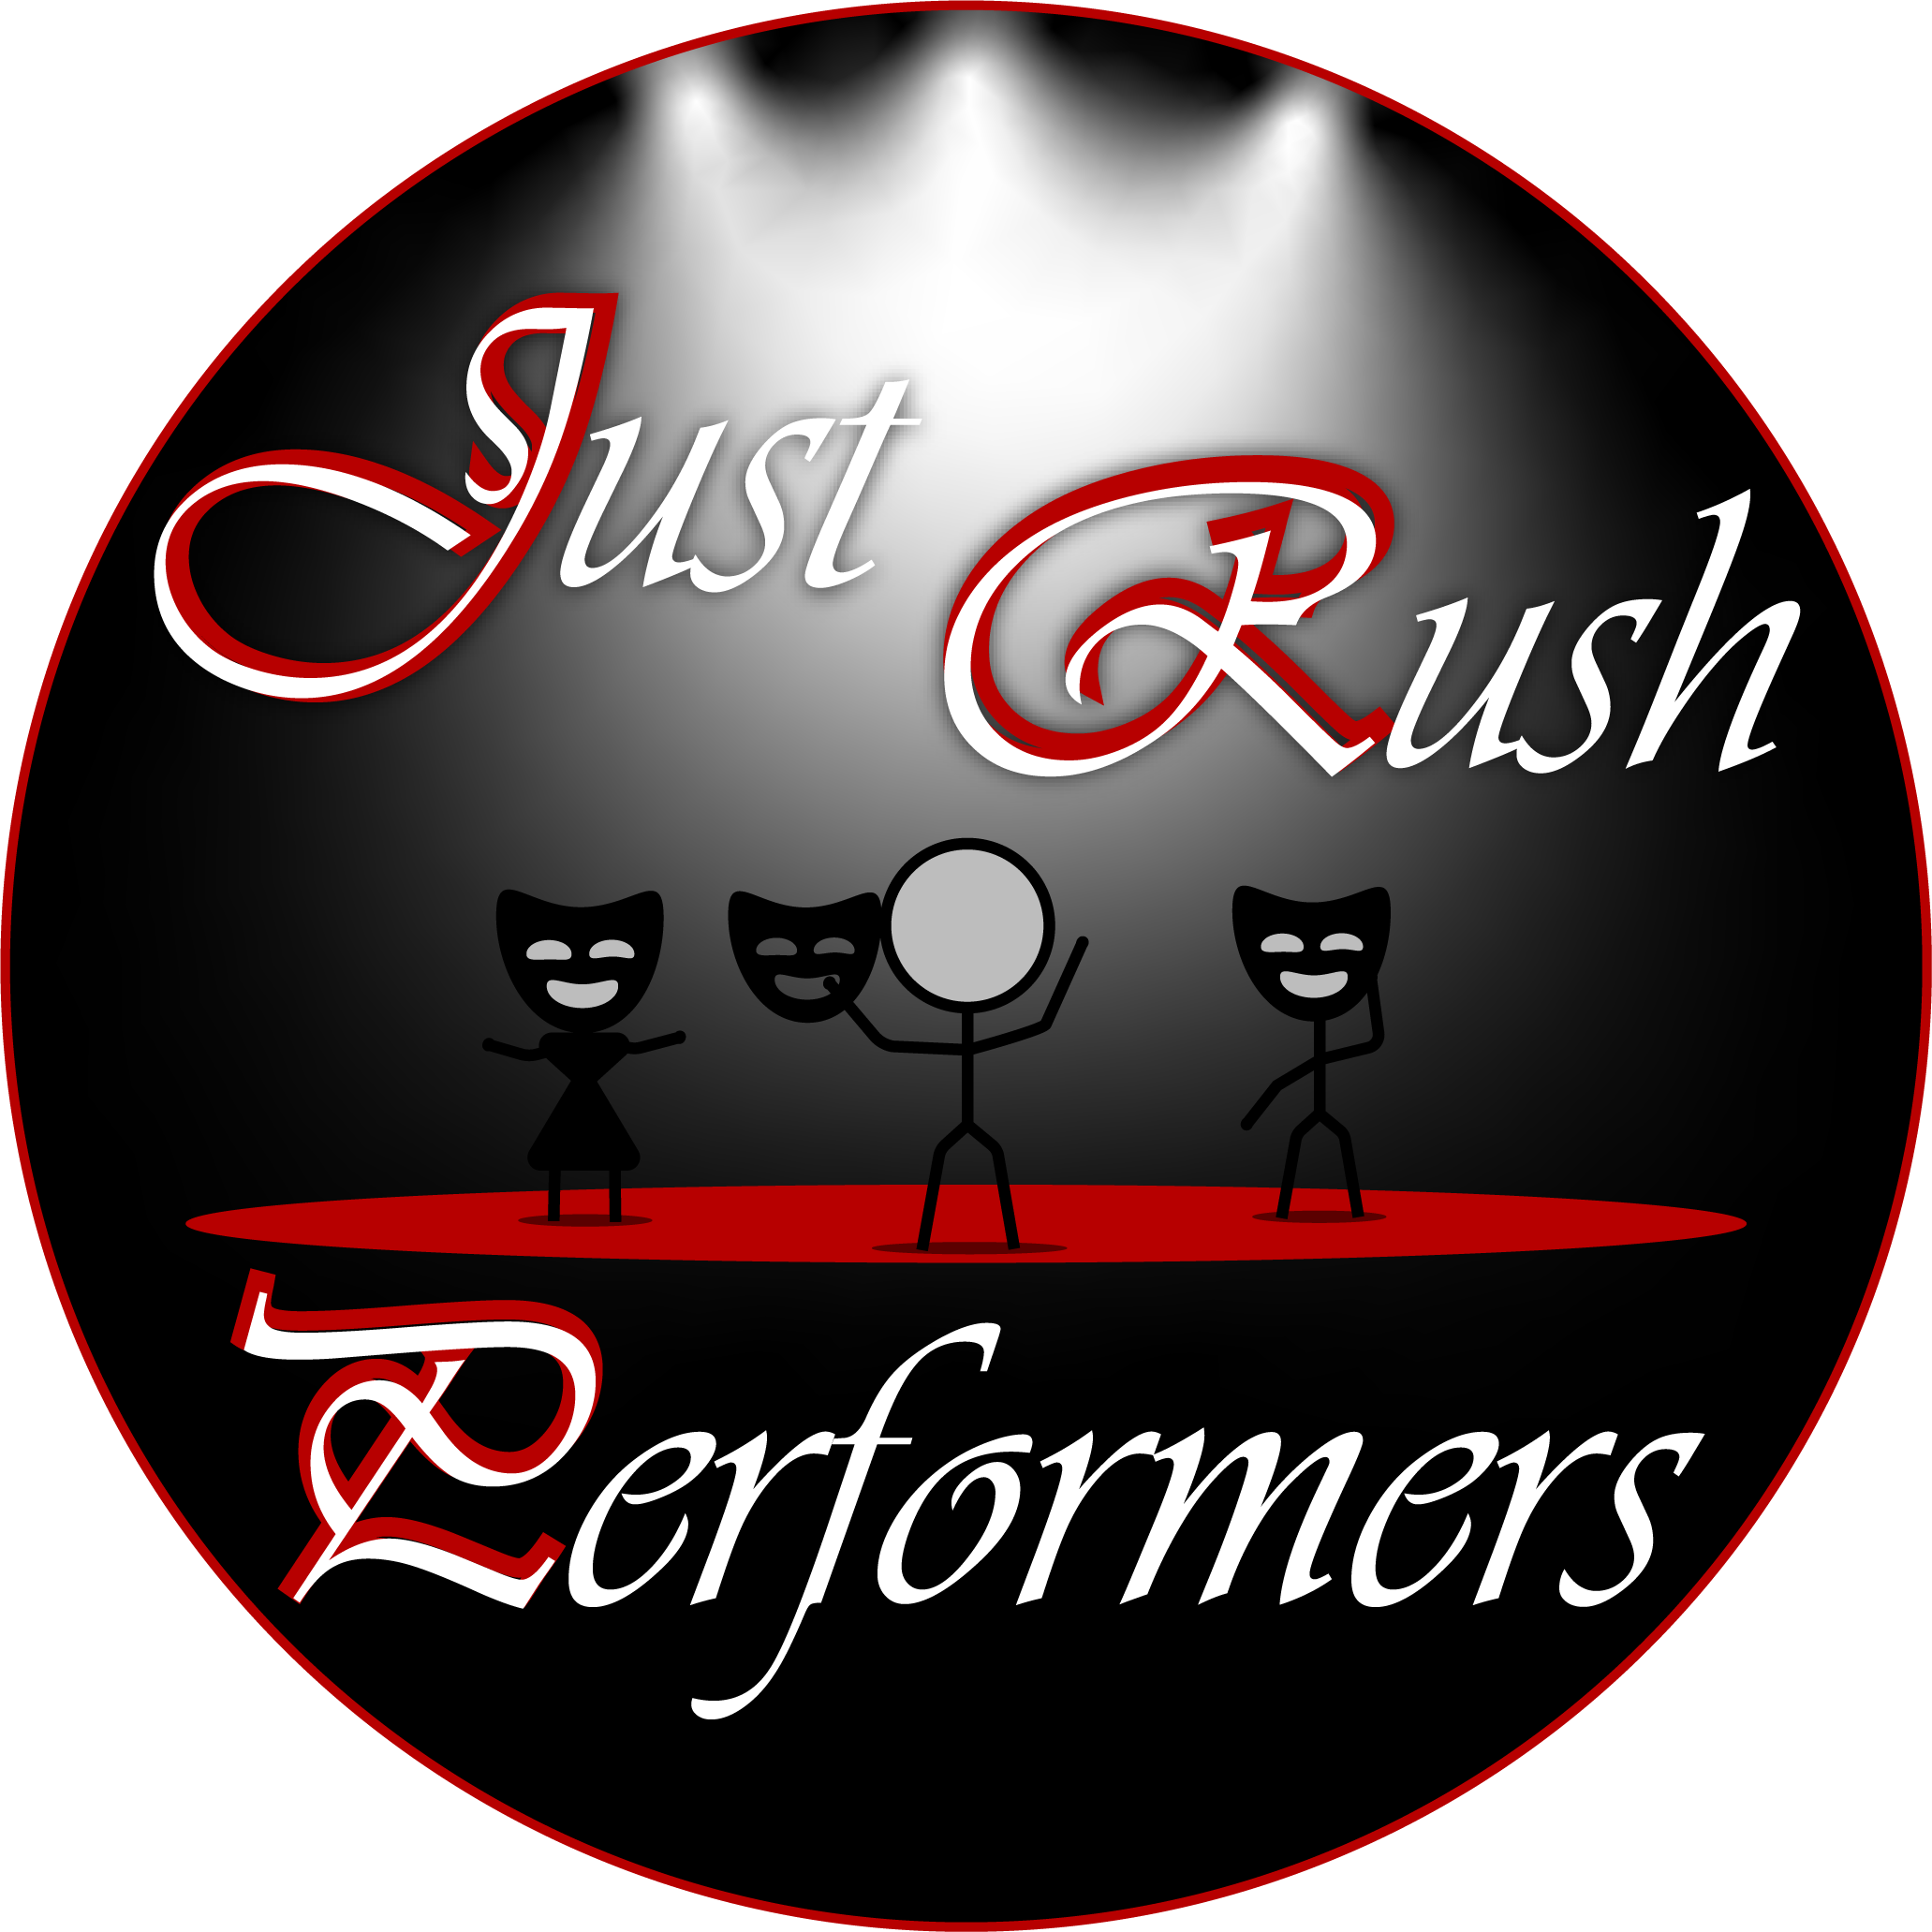 Just Rush Perfomers